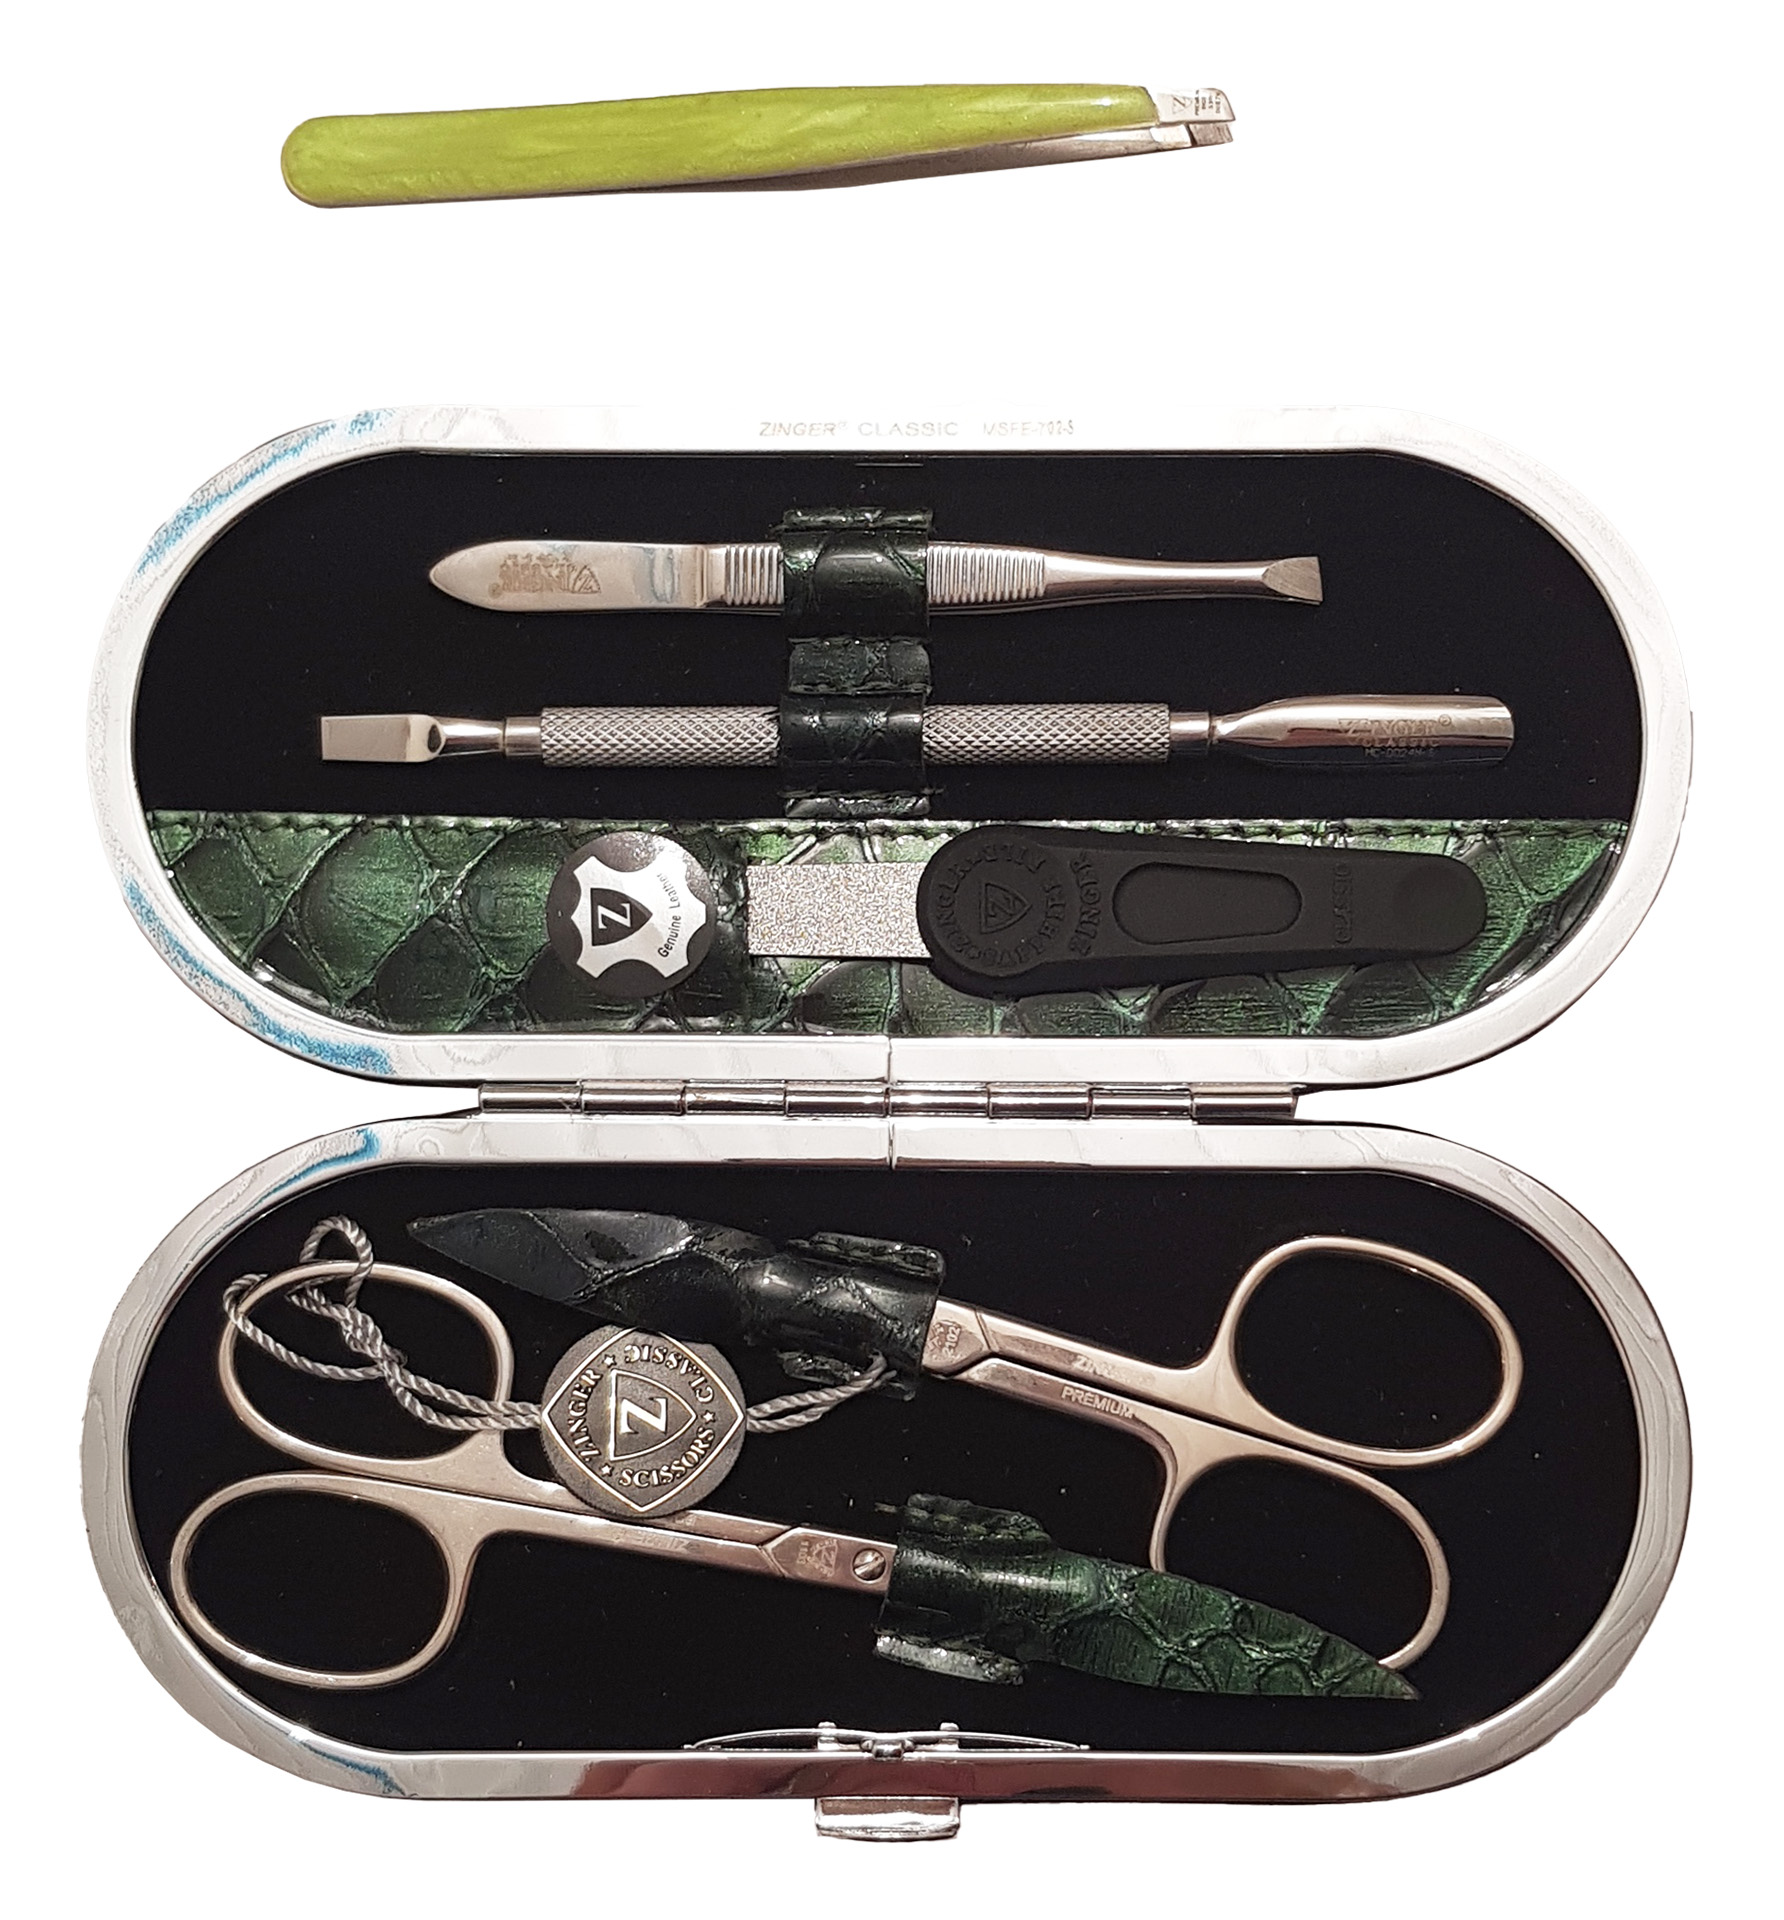 Маникюрный набор Premium-качества Zinger MSFE-702-3 S, 5 предметов + пинцет, тёмно-зелёный